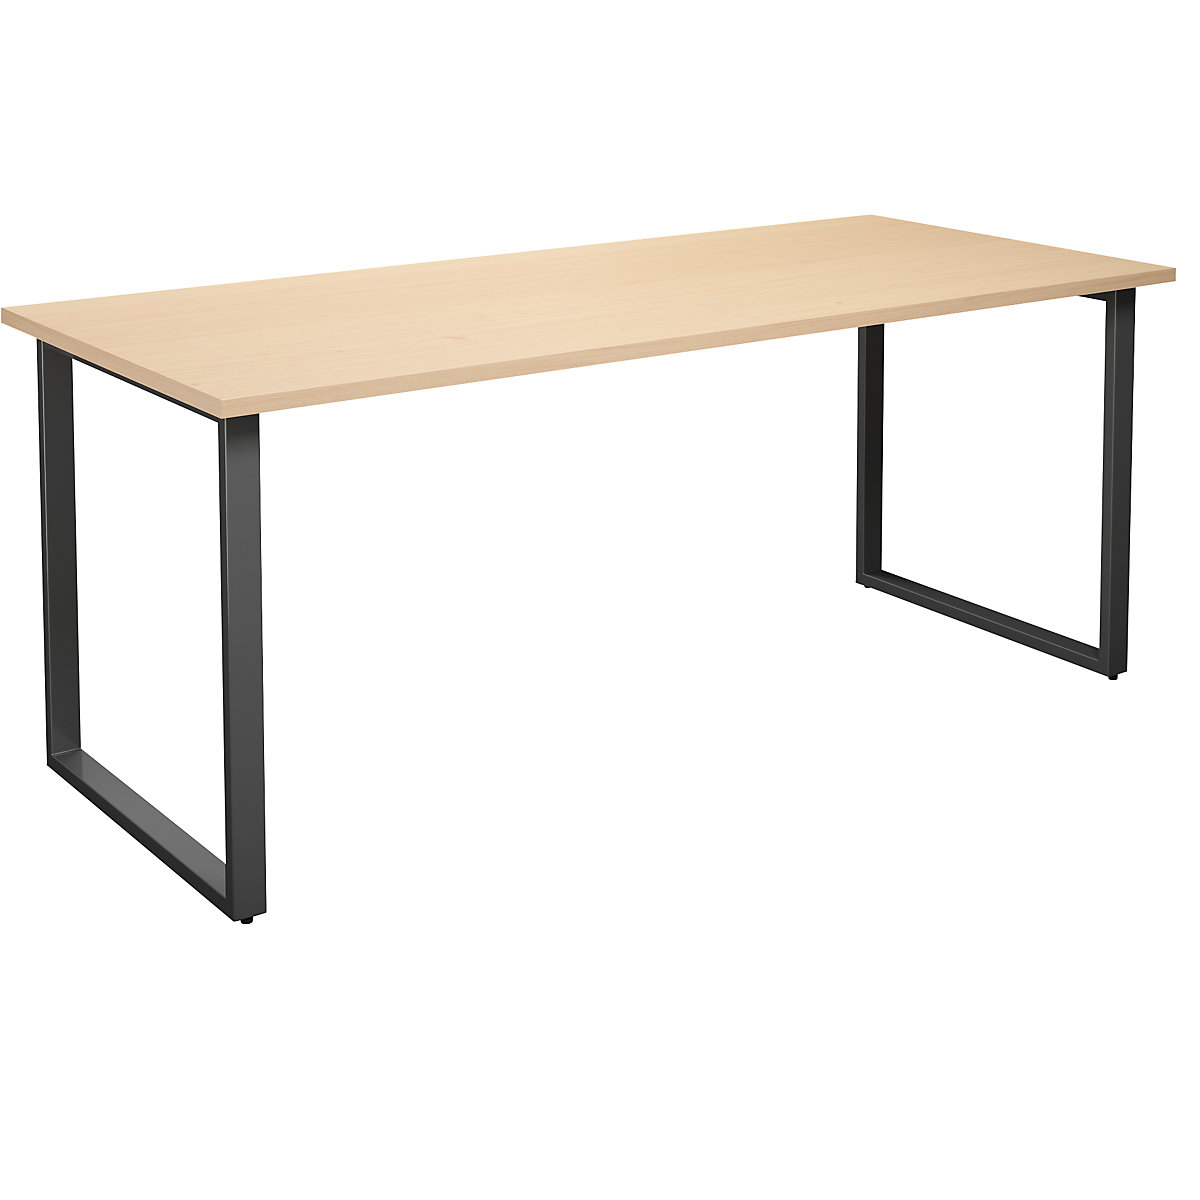 DUO-O multi-purpose desk, straight tabletop, WxD 1800 x 800 mm, birch, black-17